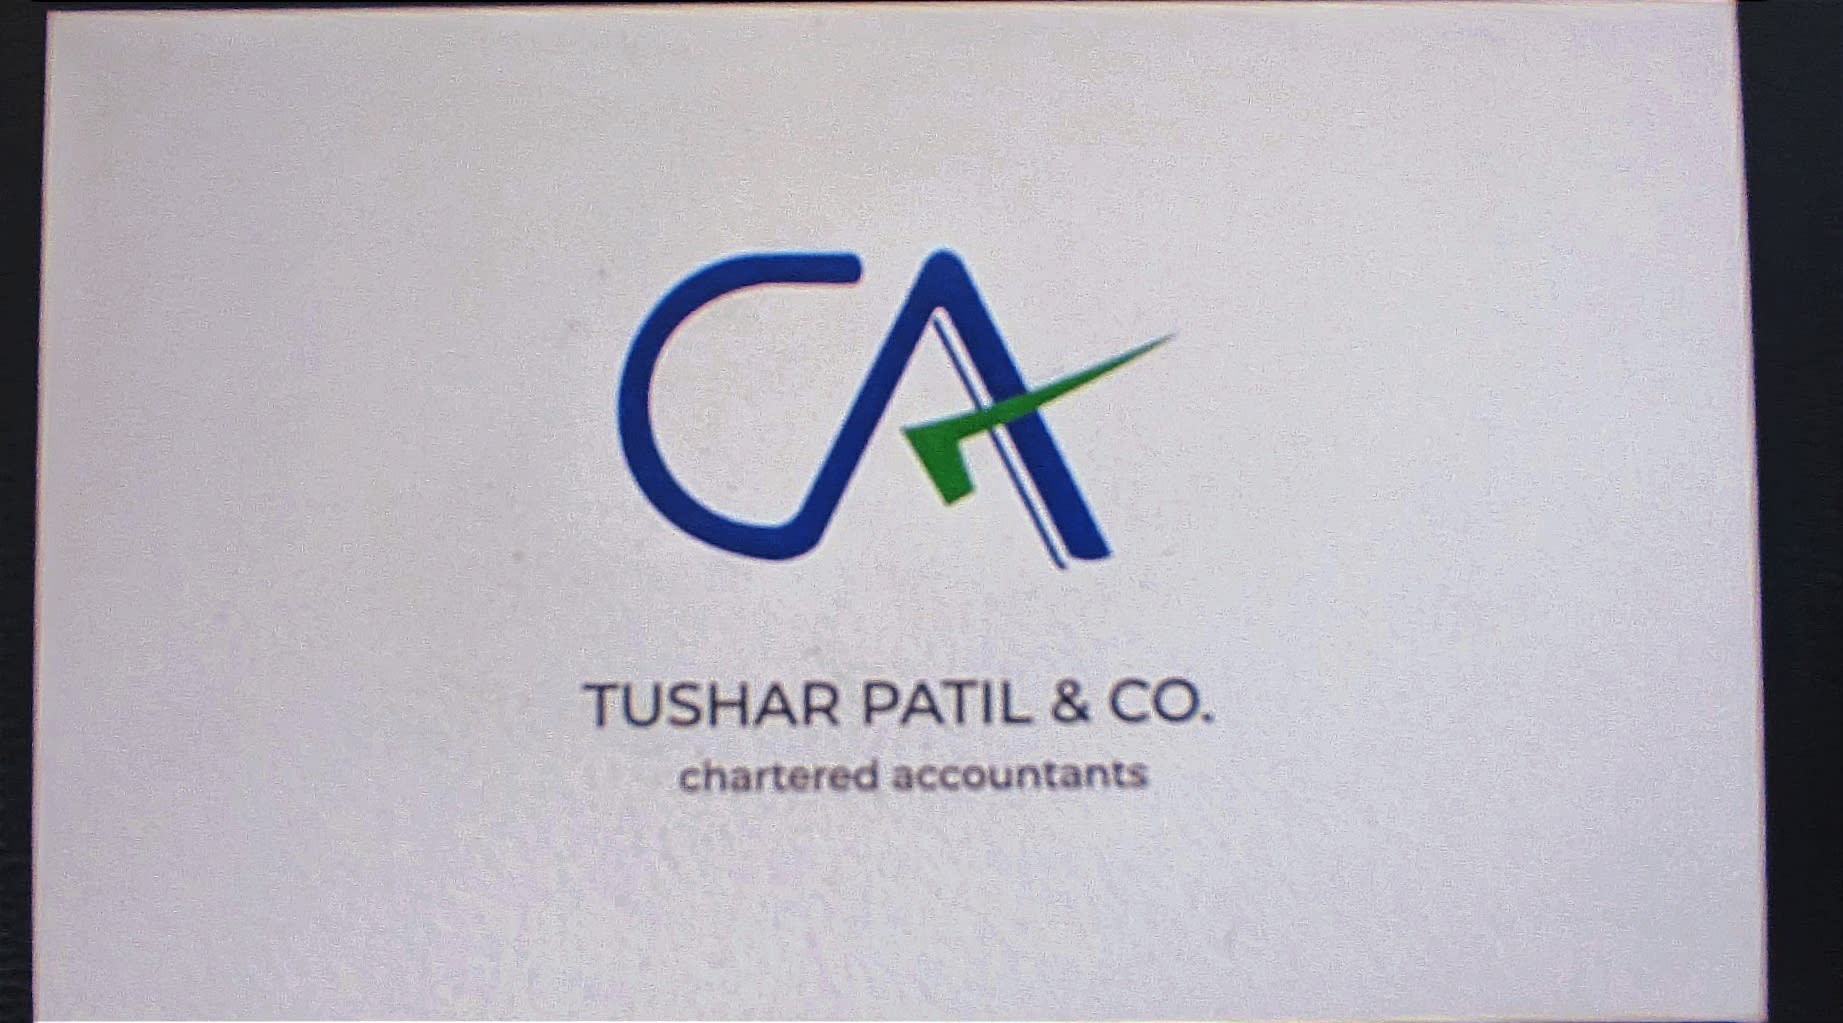 Tushar Patil & Co